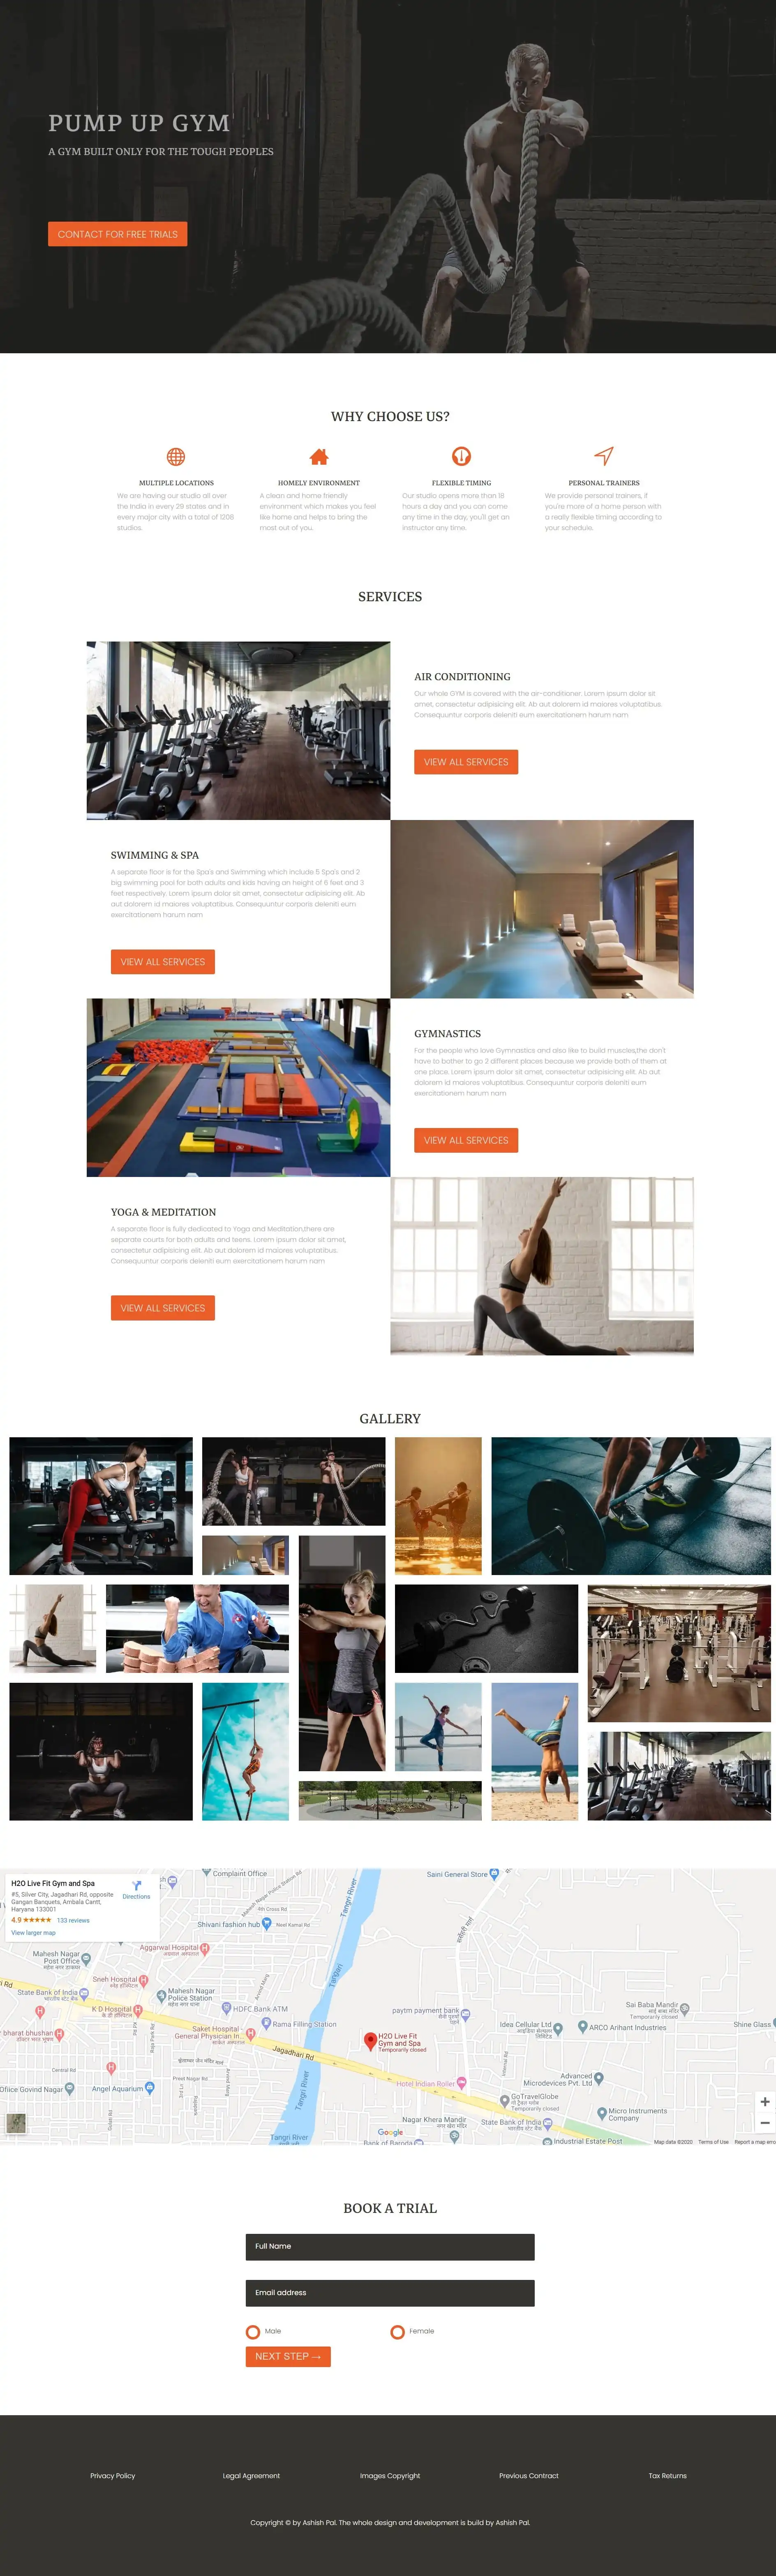 gym_website